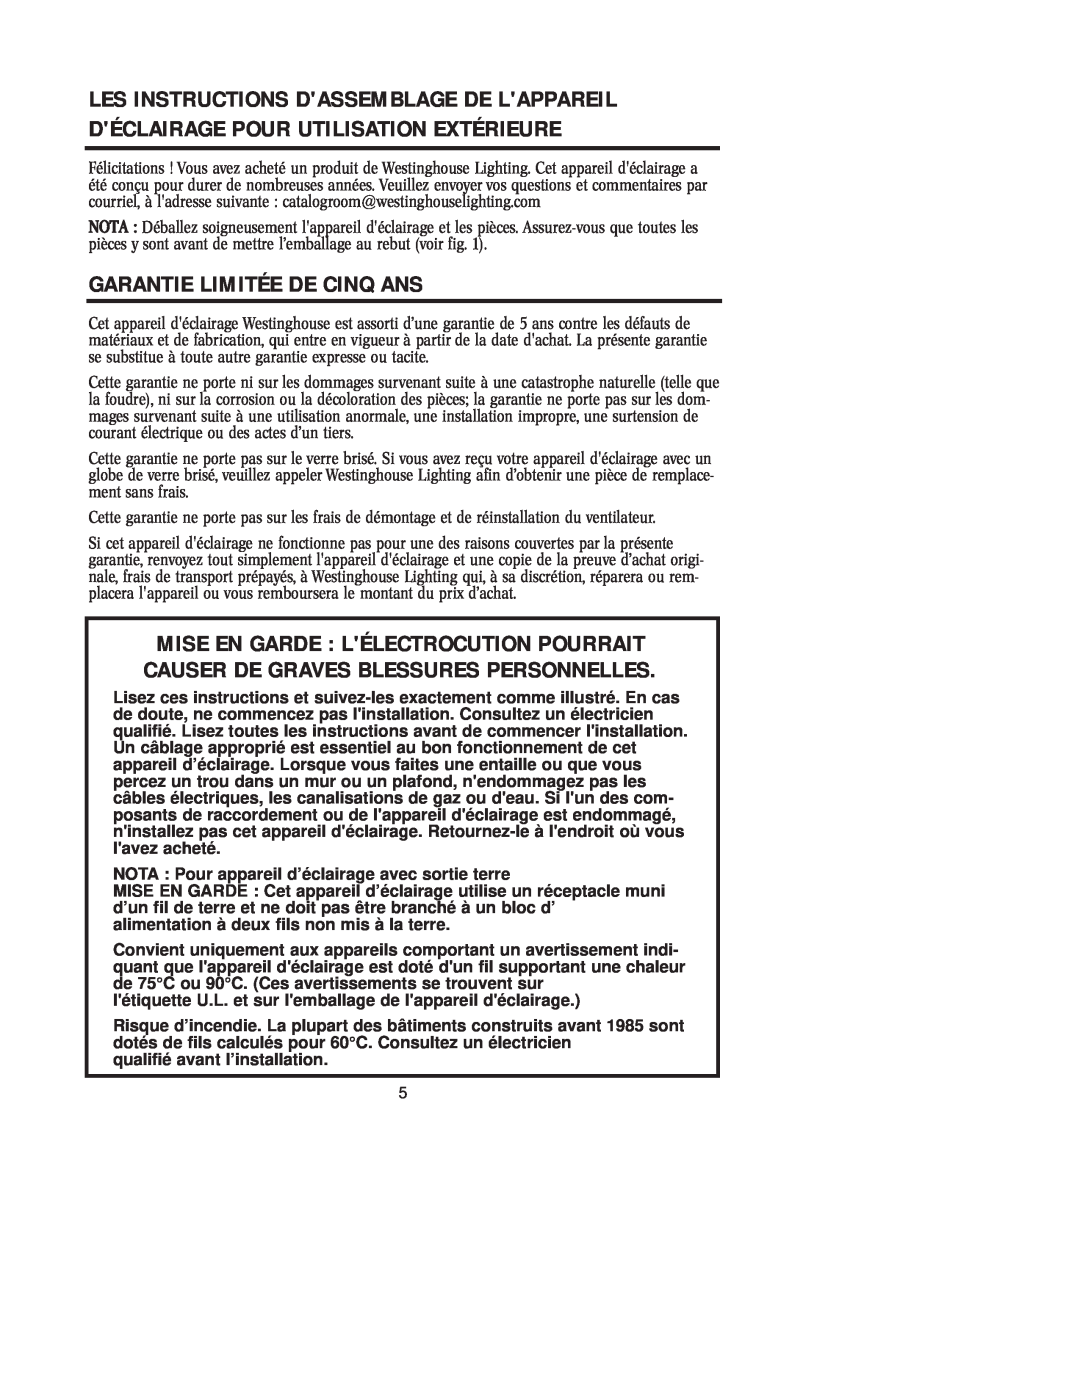 Westinghouse W-207 071705 owner manual Garantie Limitée De Cinq Ans 